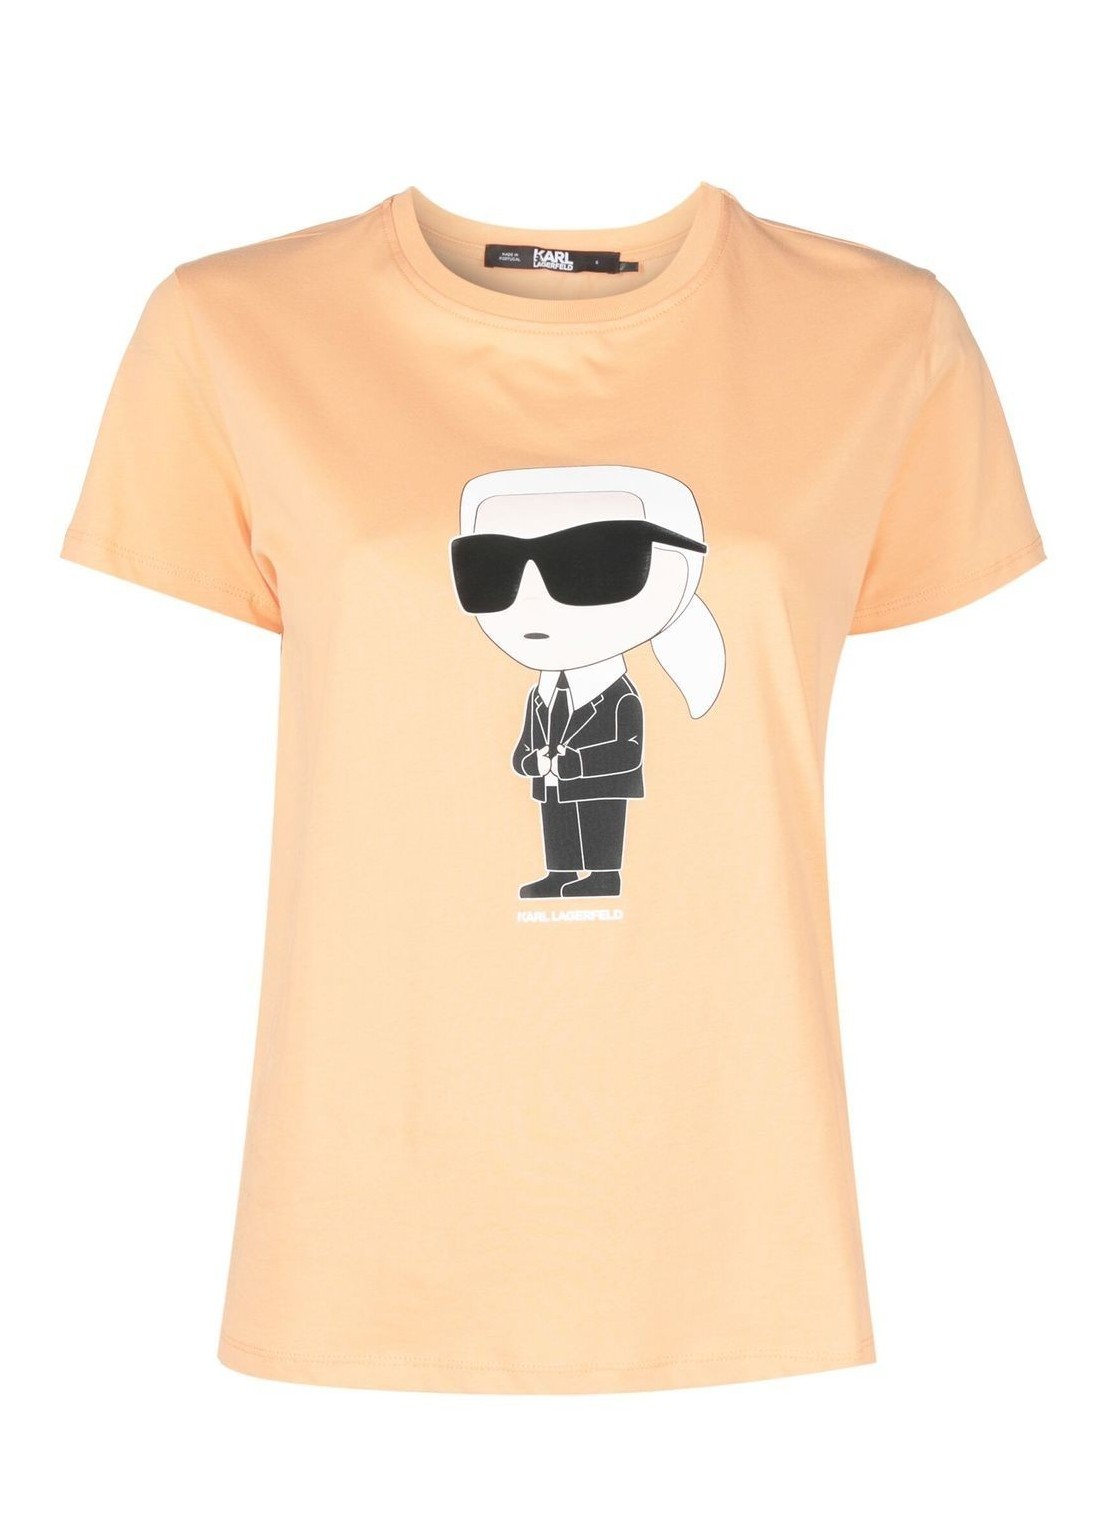 Top karl lagerfeld top woman ikonik 2.0 karl t-shirt 230w1700 138 talla naranja
 